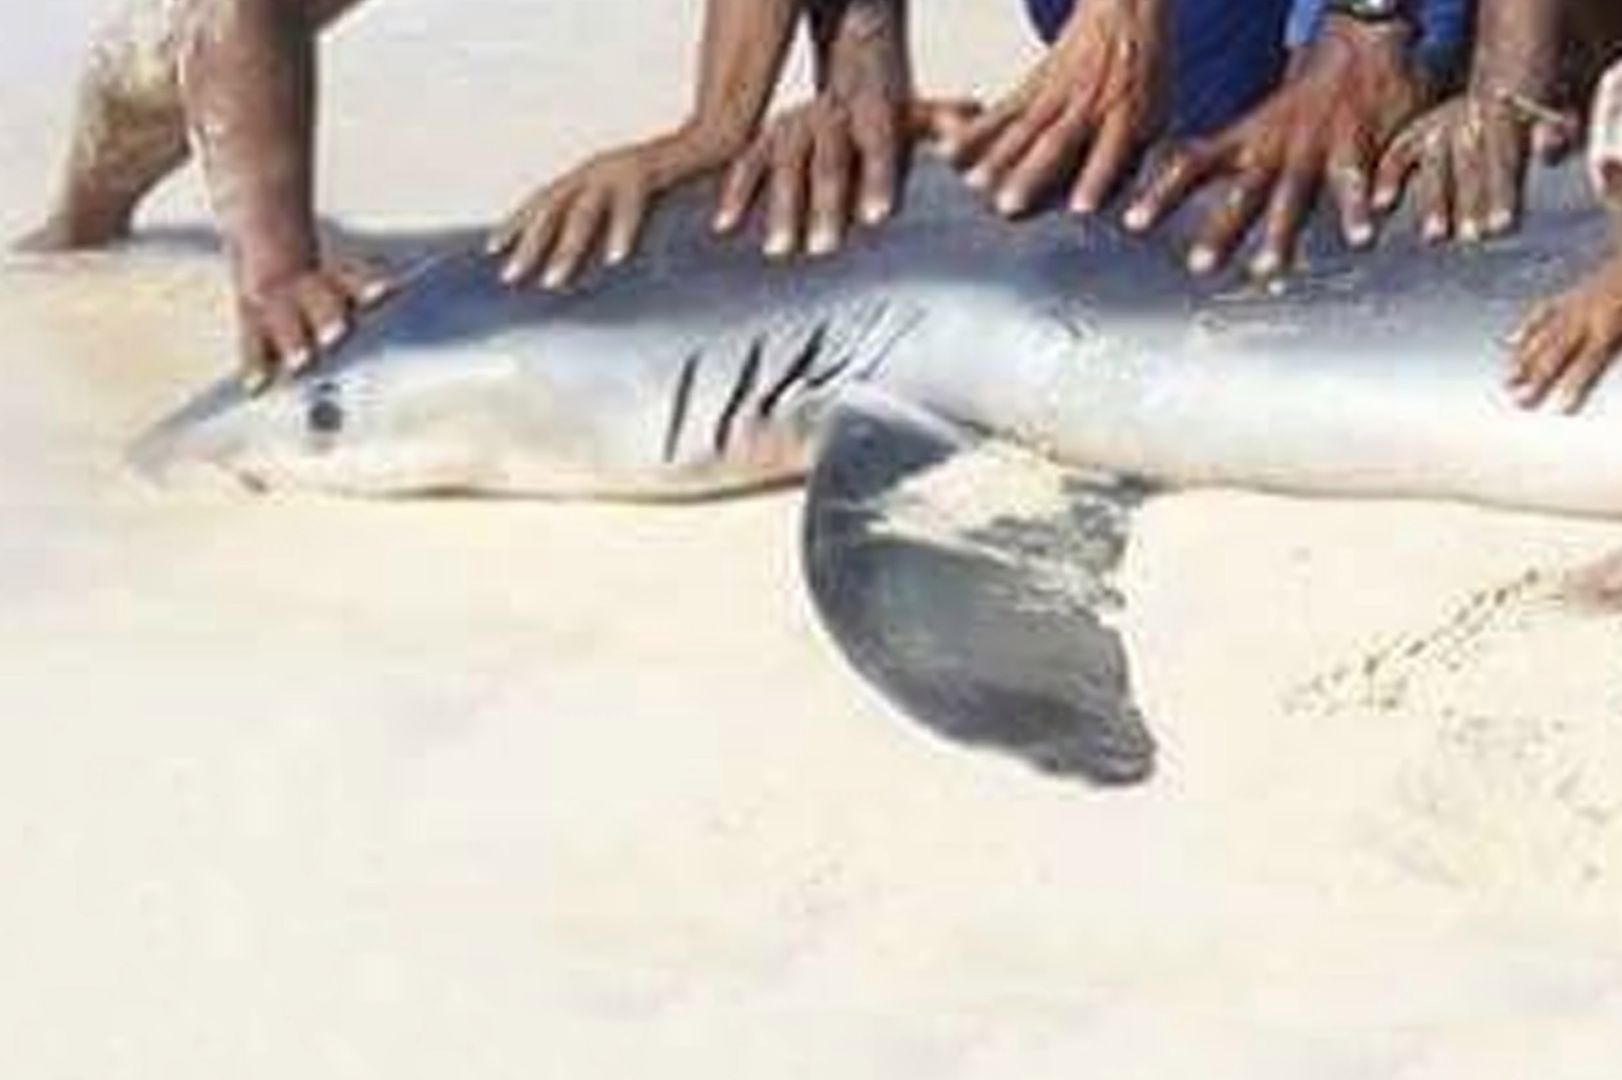 Zabili rekina, bo chcieli pamiątkowe zdjęcie